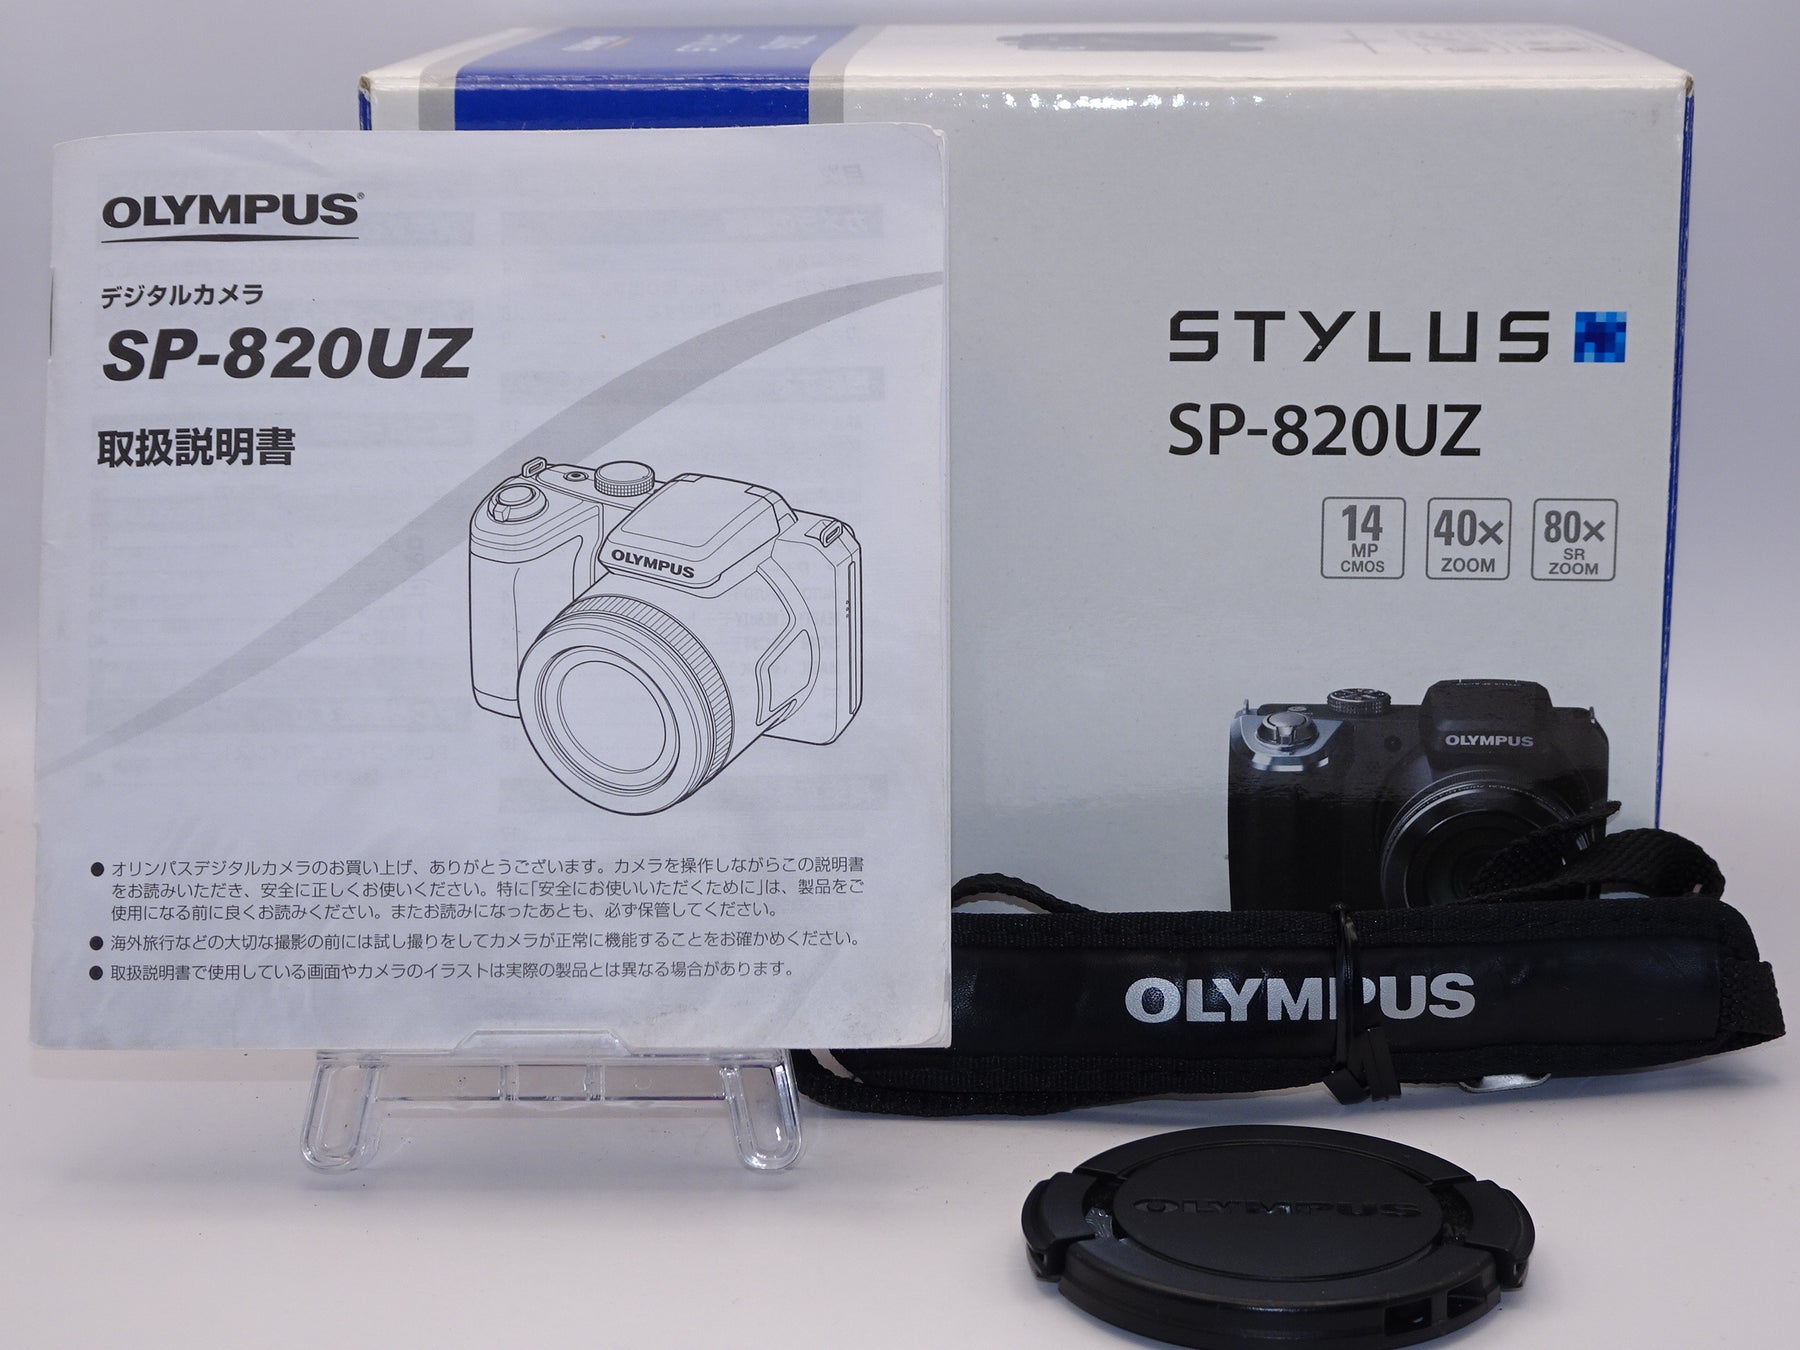 【外観特上級】OLYMPUS デジタルカメラ STYLUS SP-820UZ 1400万画素CMOS 光学40倍ズーム 広角22.4mm ブラック  SP-820UZ BLK